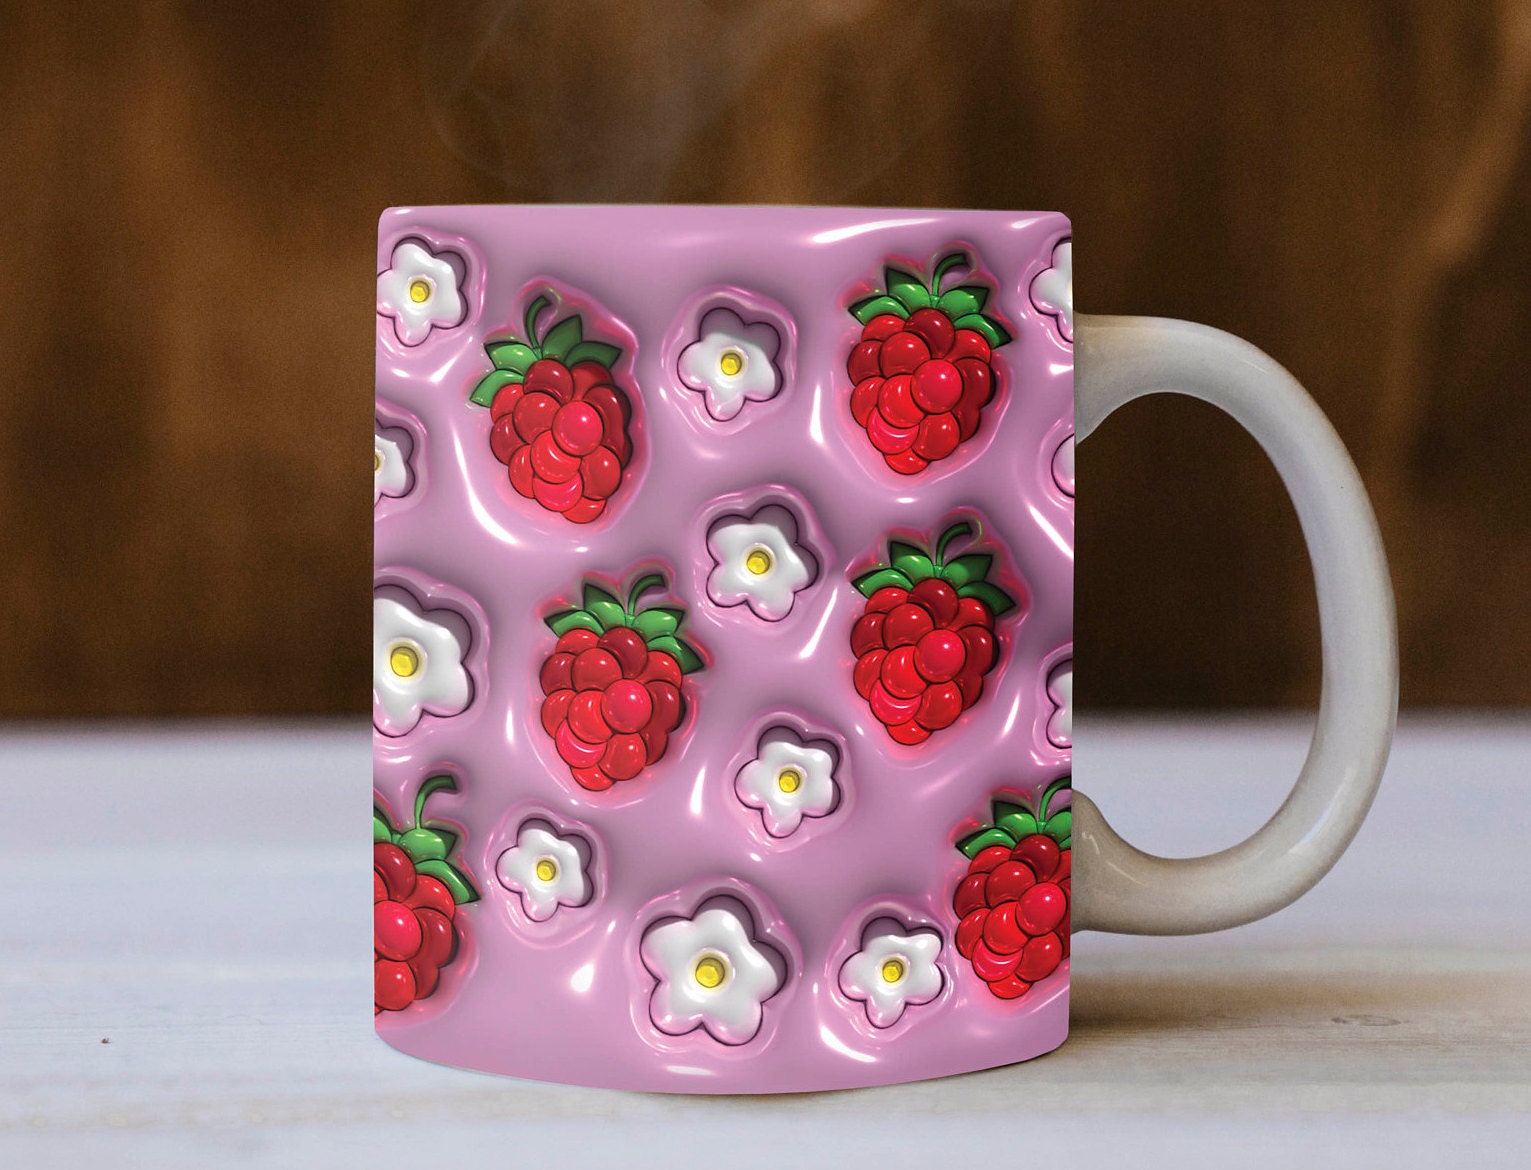 3D Fruits Mug, 3D Flower Mug, Berries Design, 11 & 15 Oz Mug